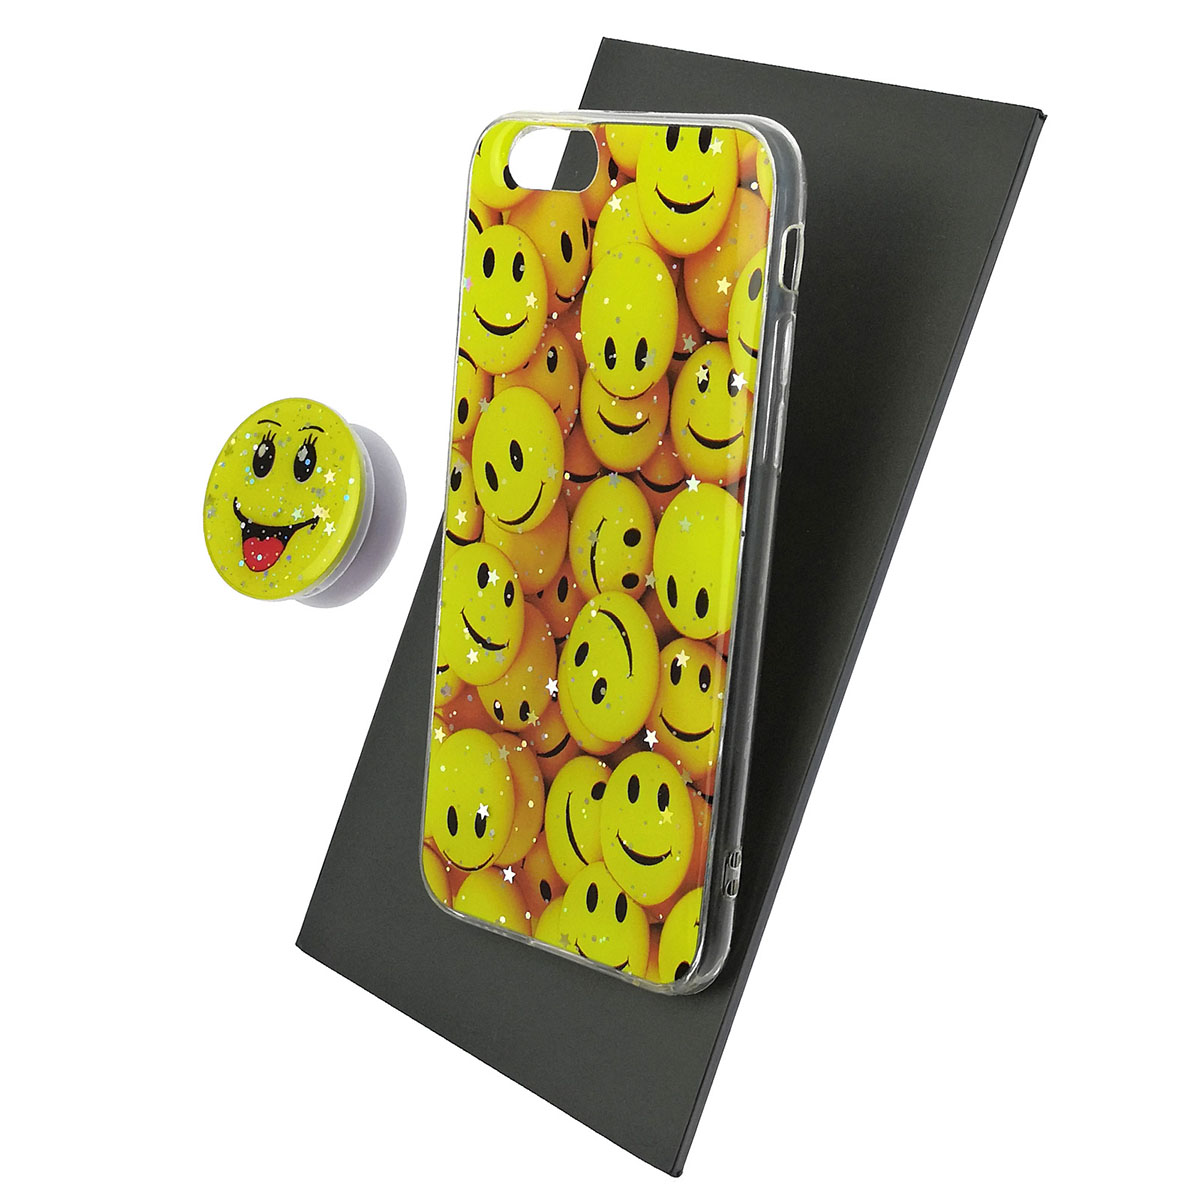 Чехол накладка для APPLE iPhone 6, 6G, 6S, силикон, фактурный глянец, с поп сокетом, рисунок Smile